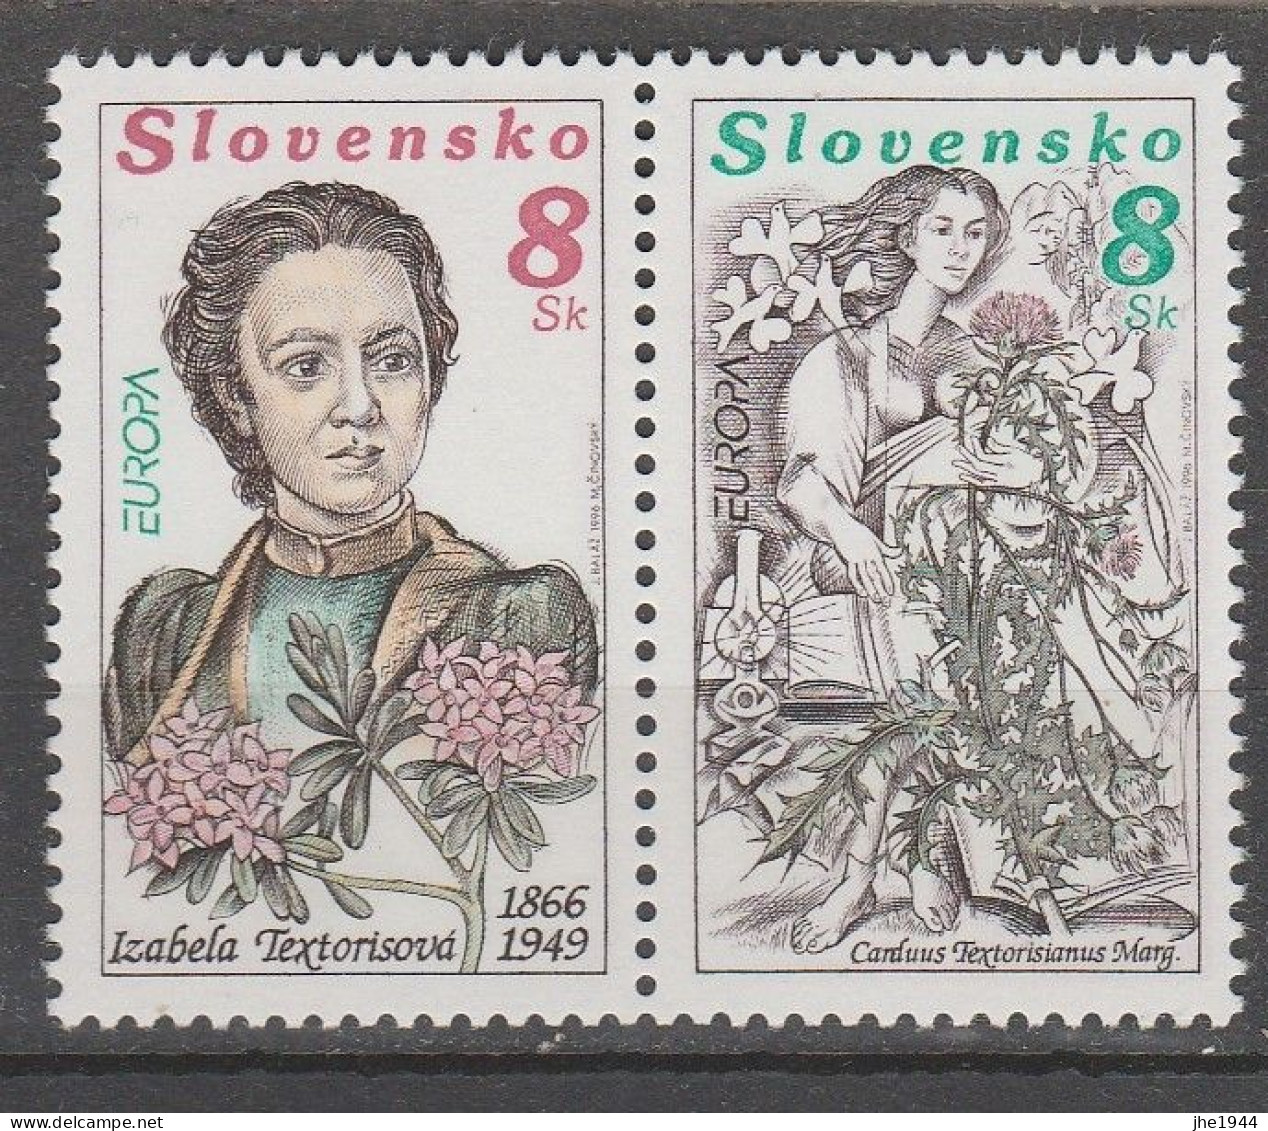 Europa 1996 Les femmes célébres Voir liste des timbres à vendre **